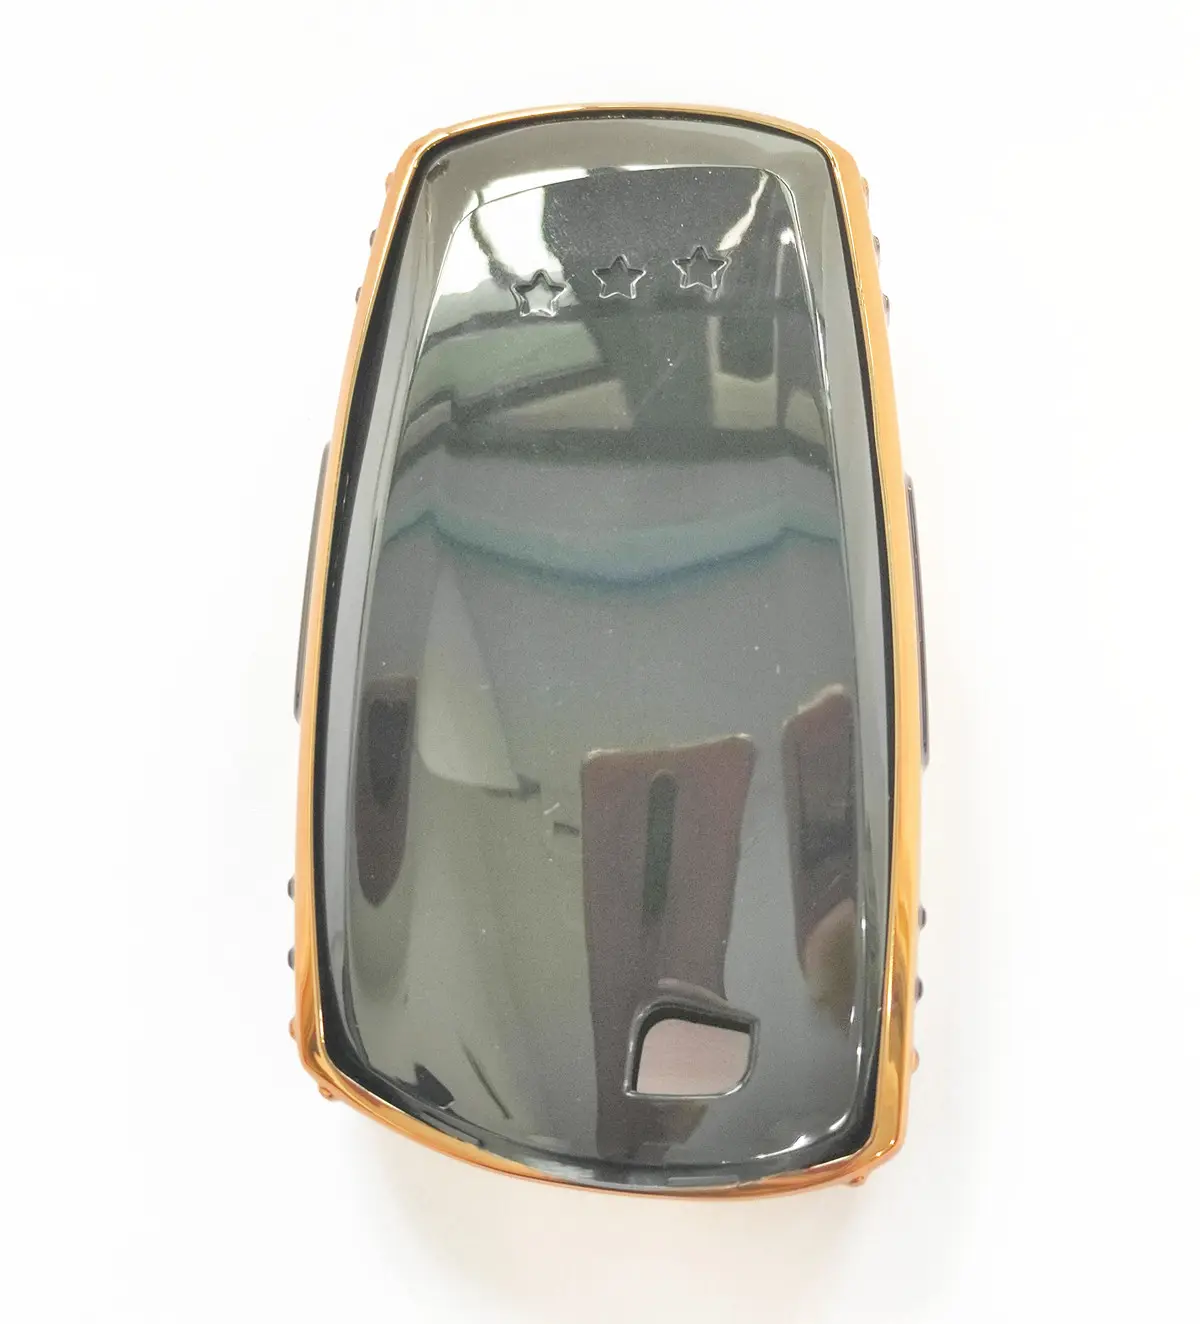 Auto Auto Key Cover Schutz Key Case Shell Fit für A Series Smart 3 Tasten